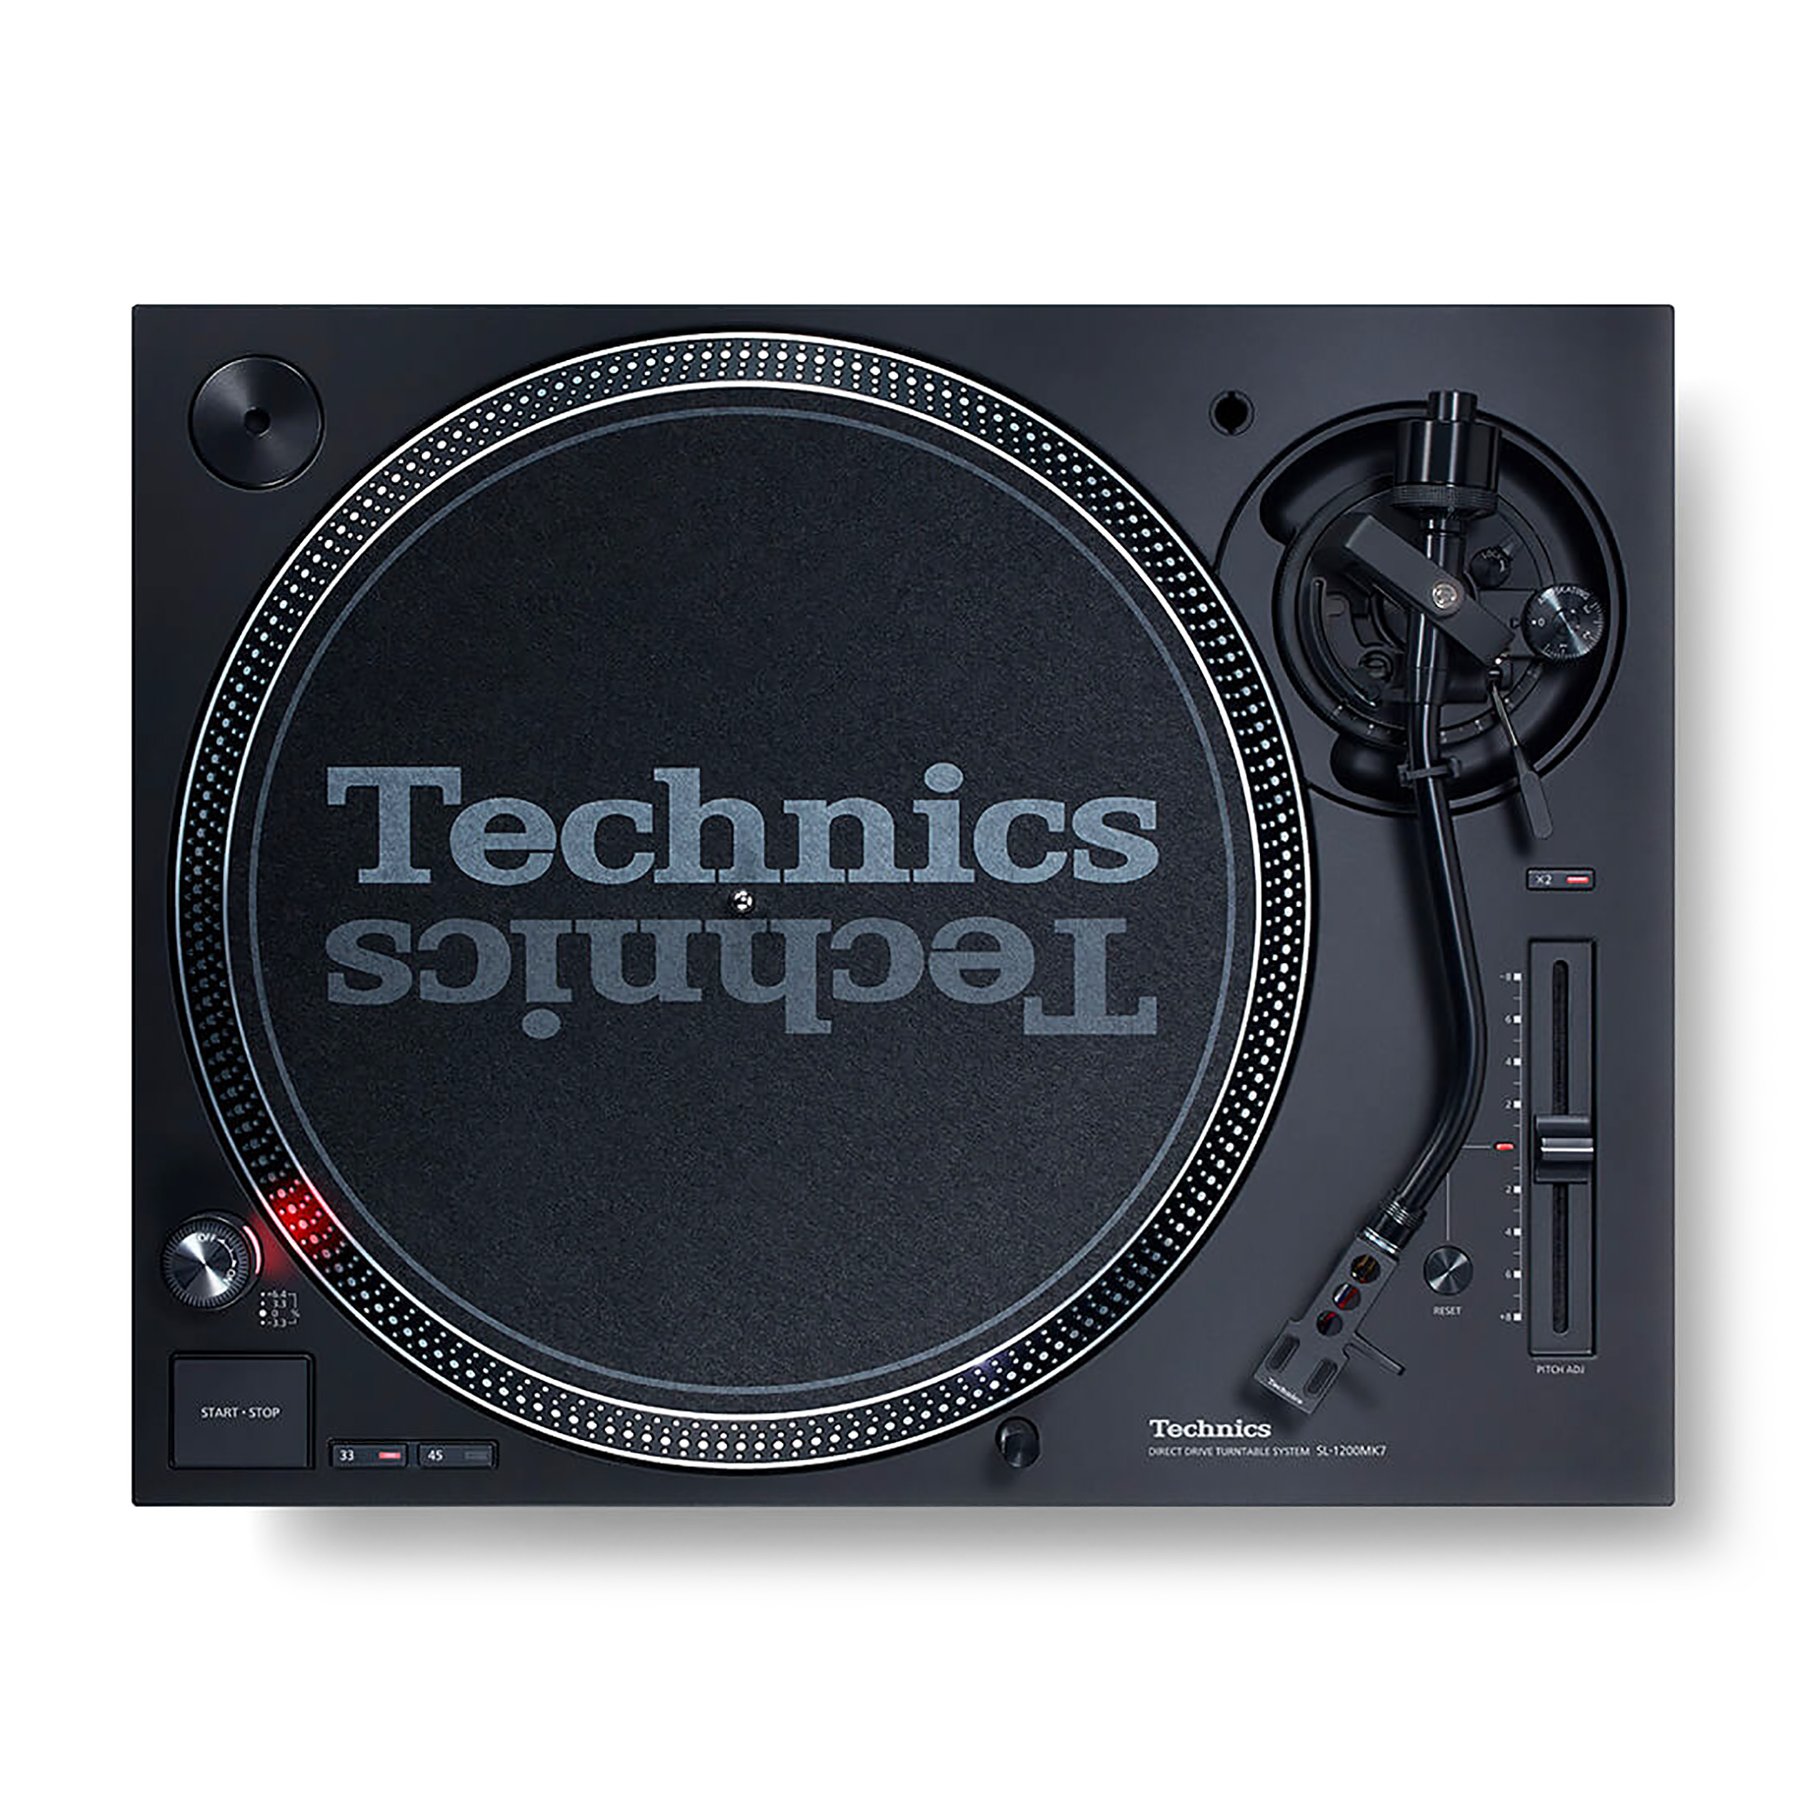 Technics Gold Turntable Limited Edition Insulator Foot - Shop l Ultimate DJ  Gear l UDG Gear l Stanton DJ l Technics DJ l Crane Hardware l AIAIAI l  Cerwin-Vega I B-52